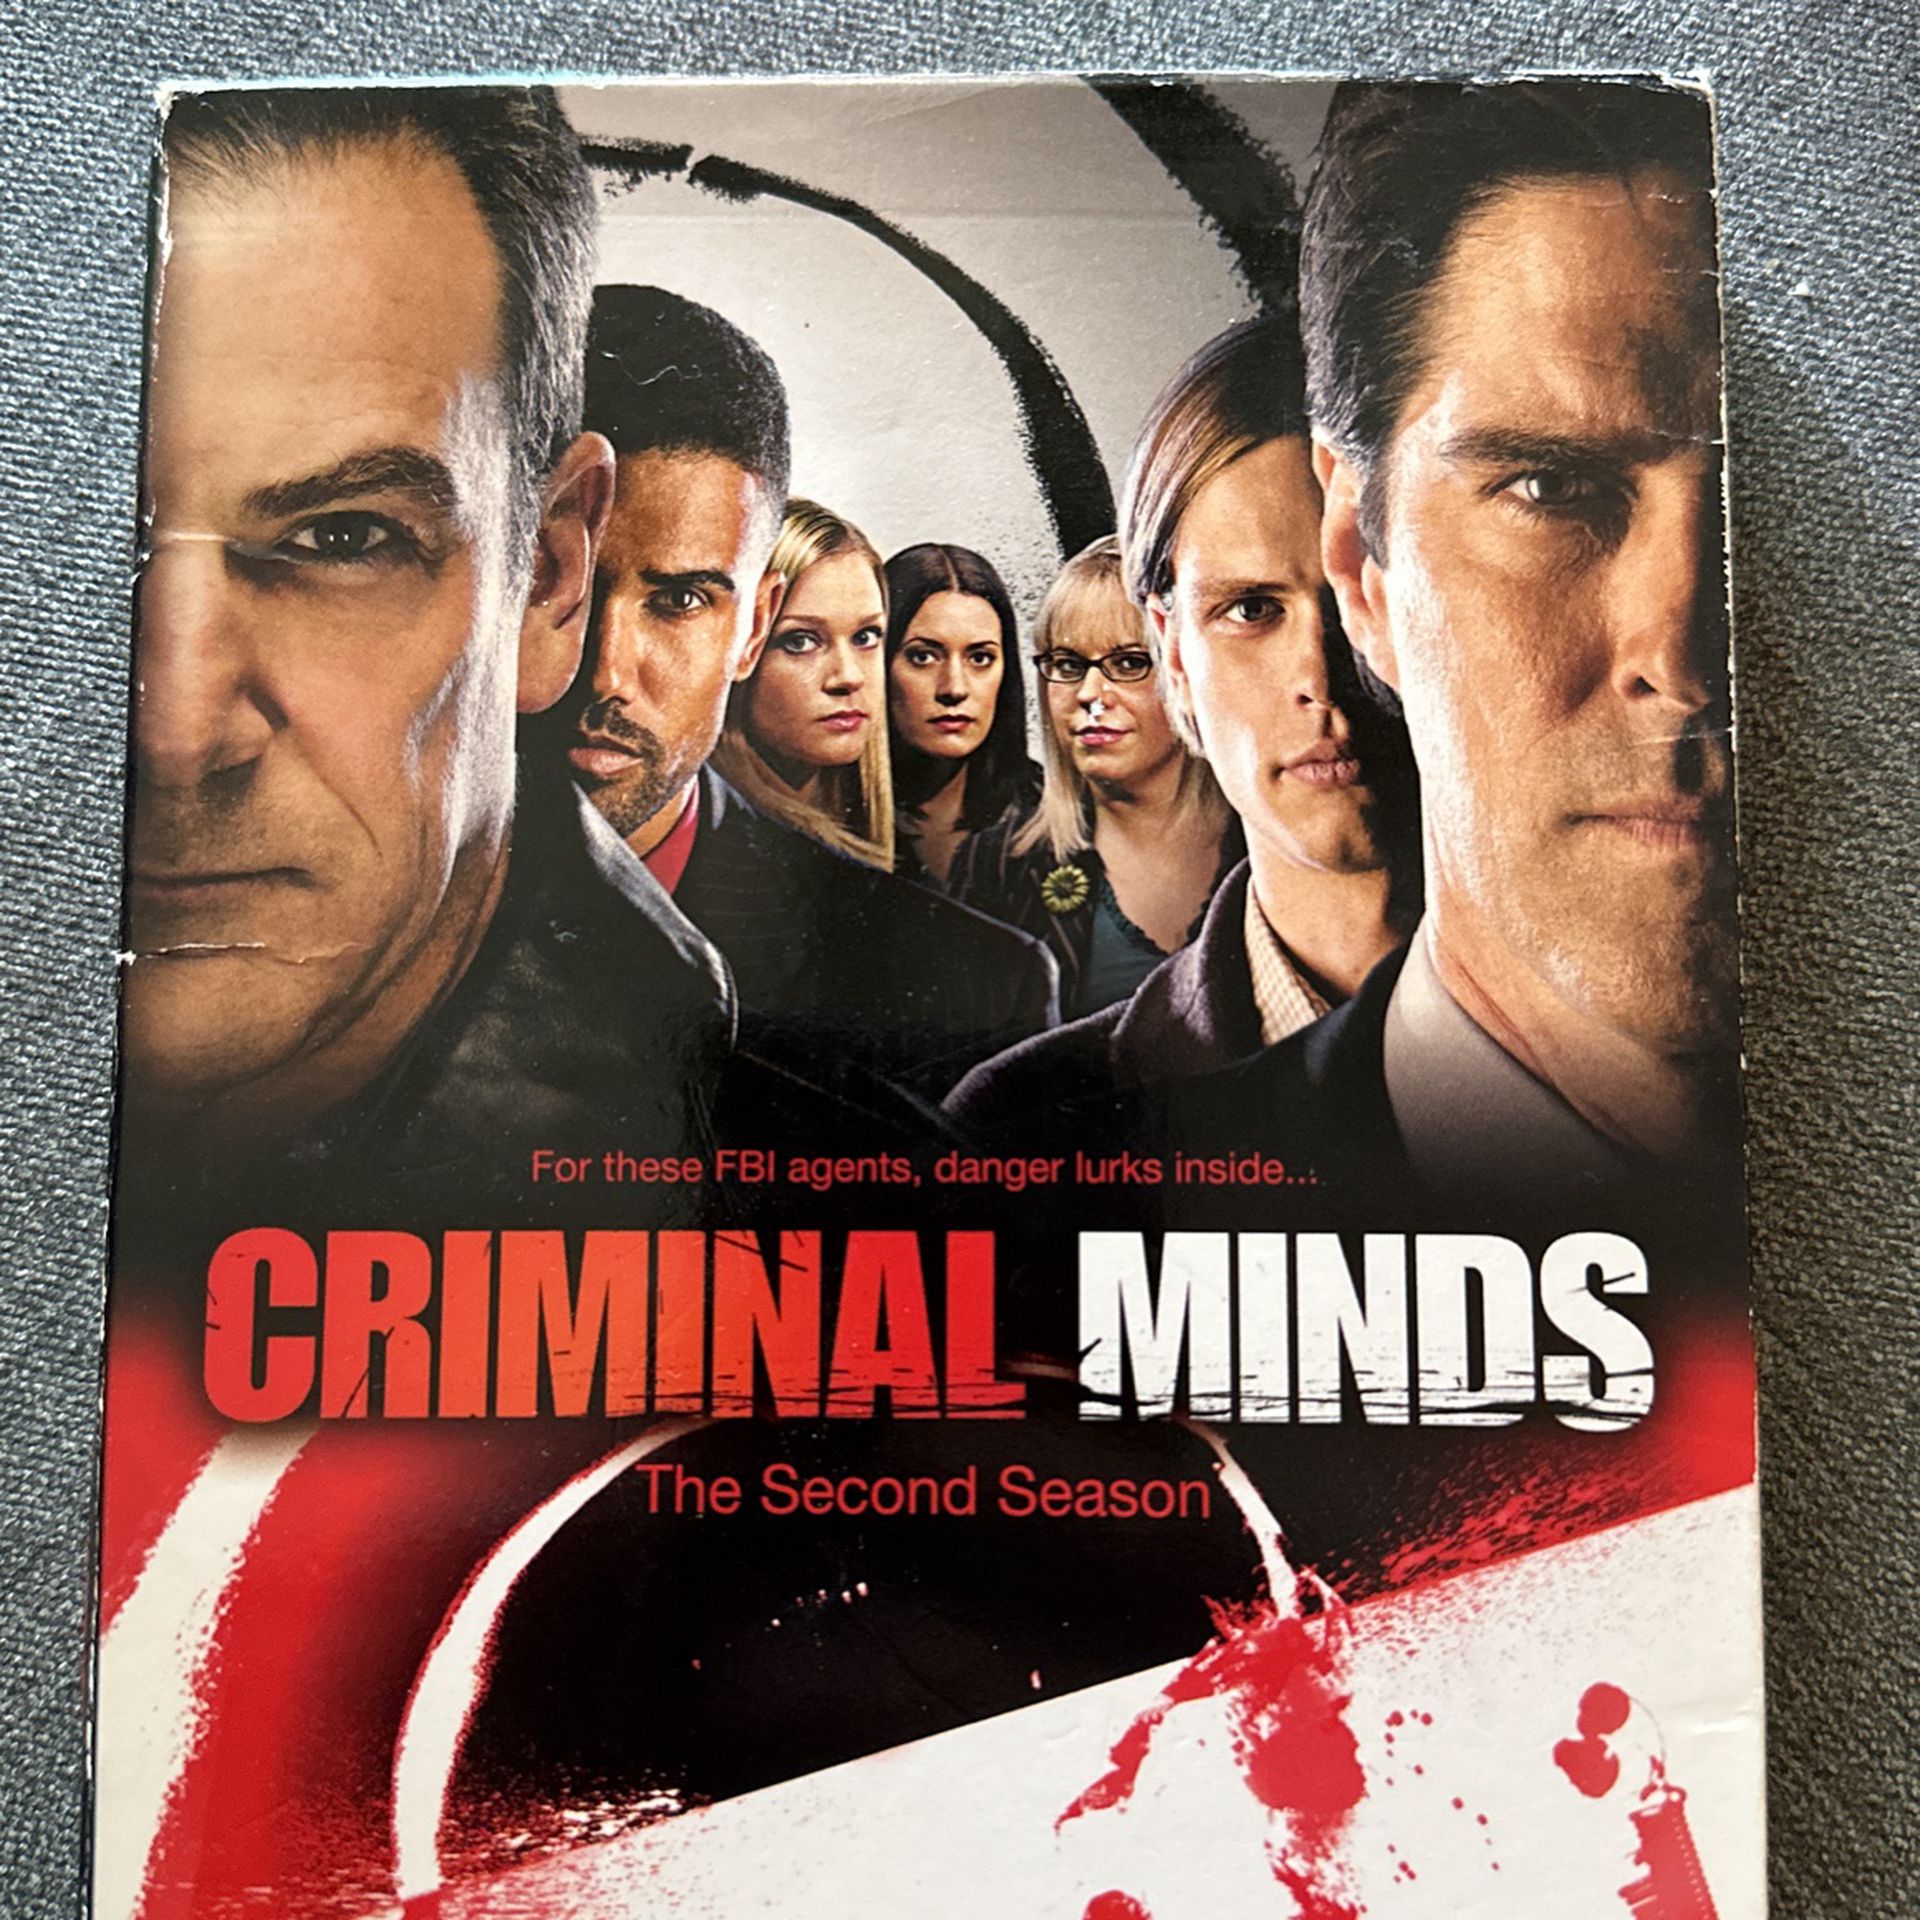 Criminal Minds Second season DVDs